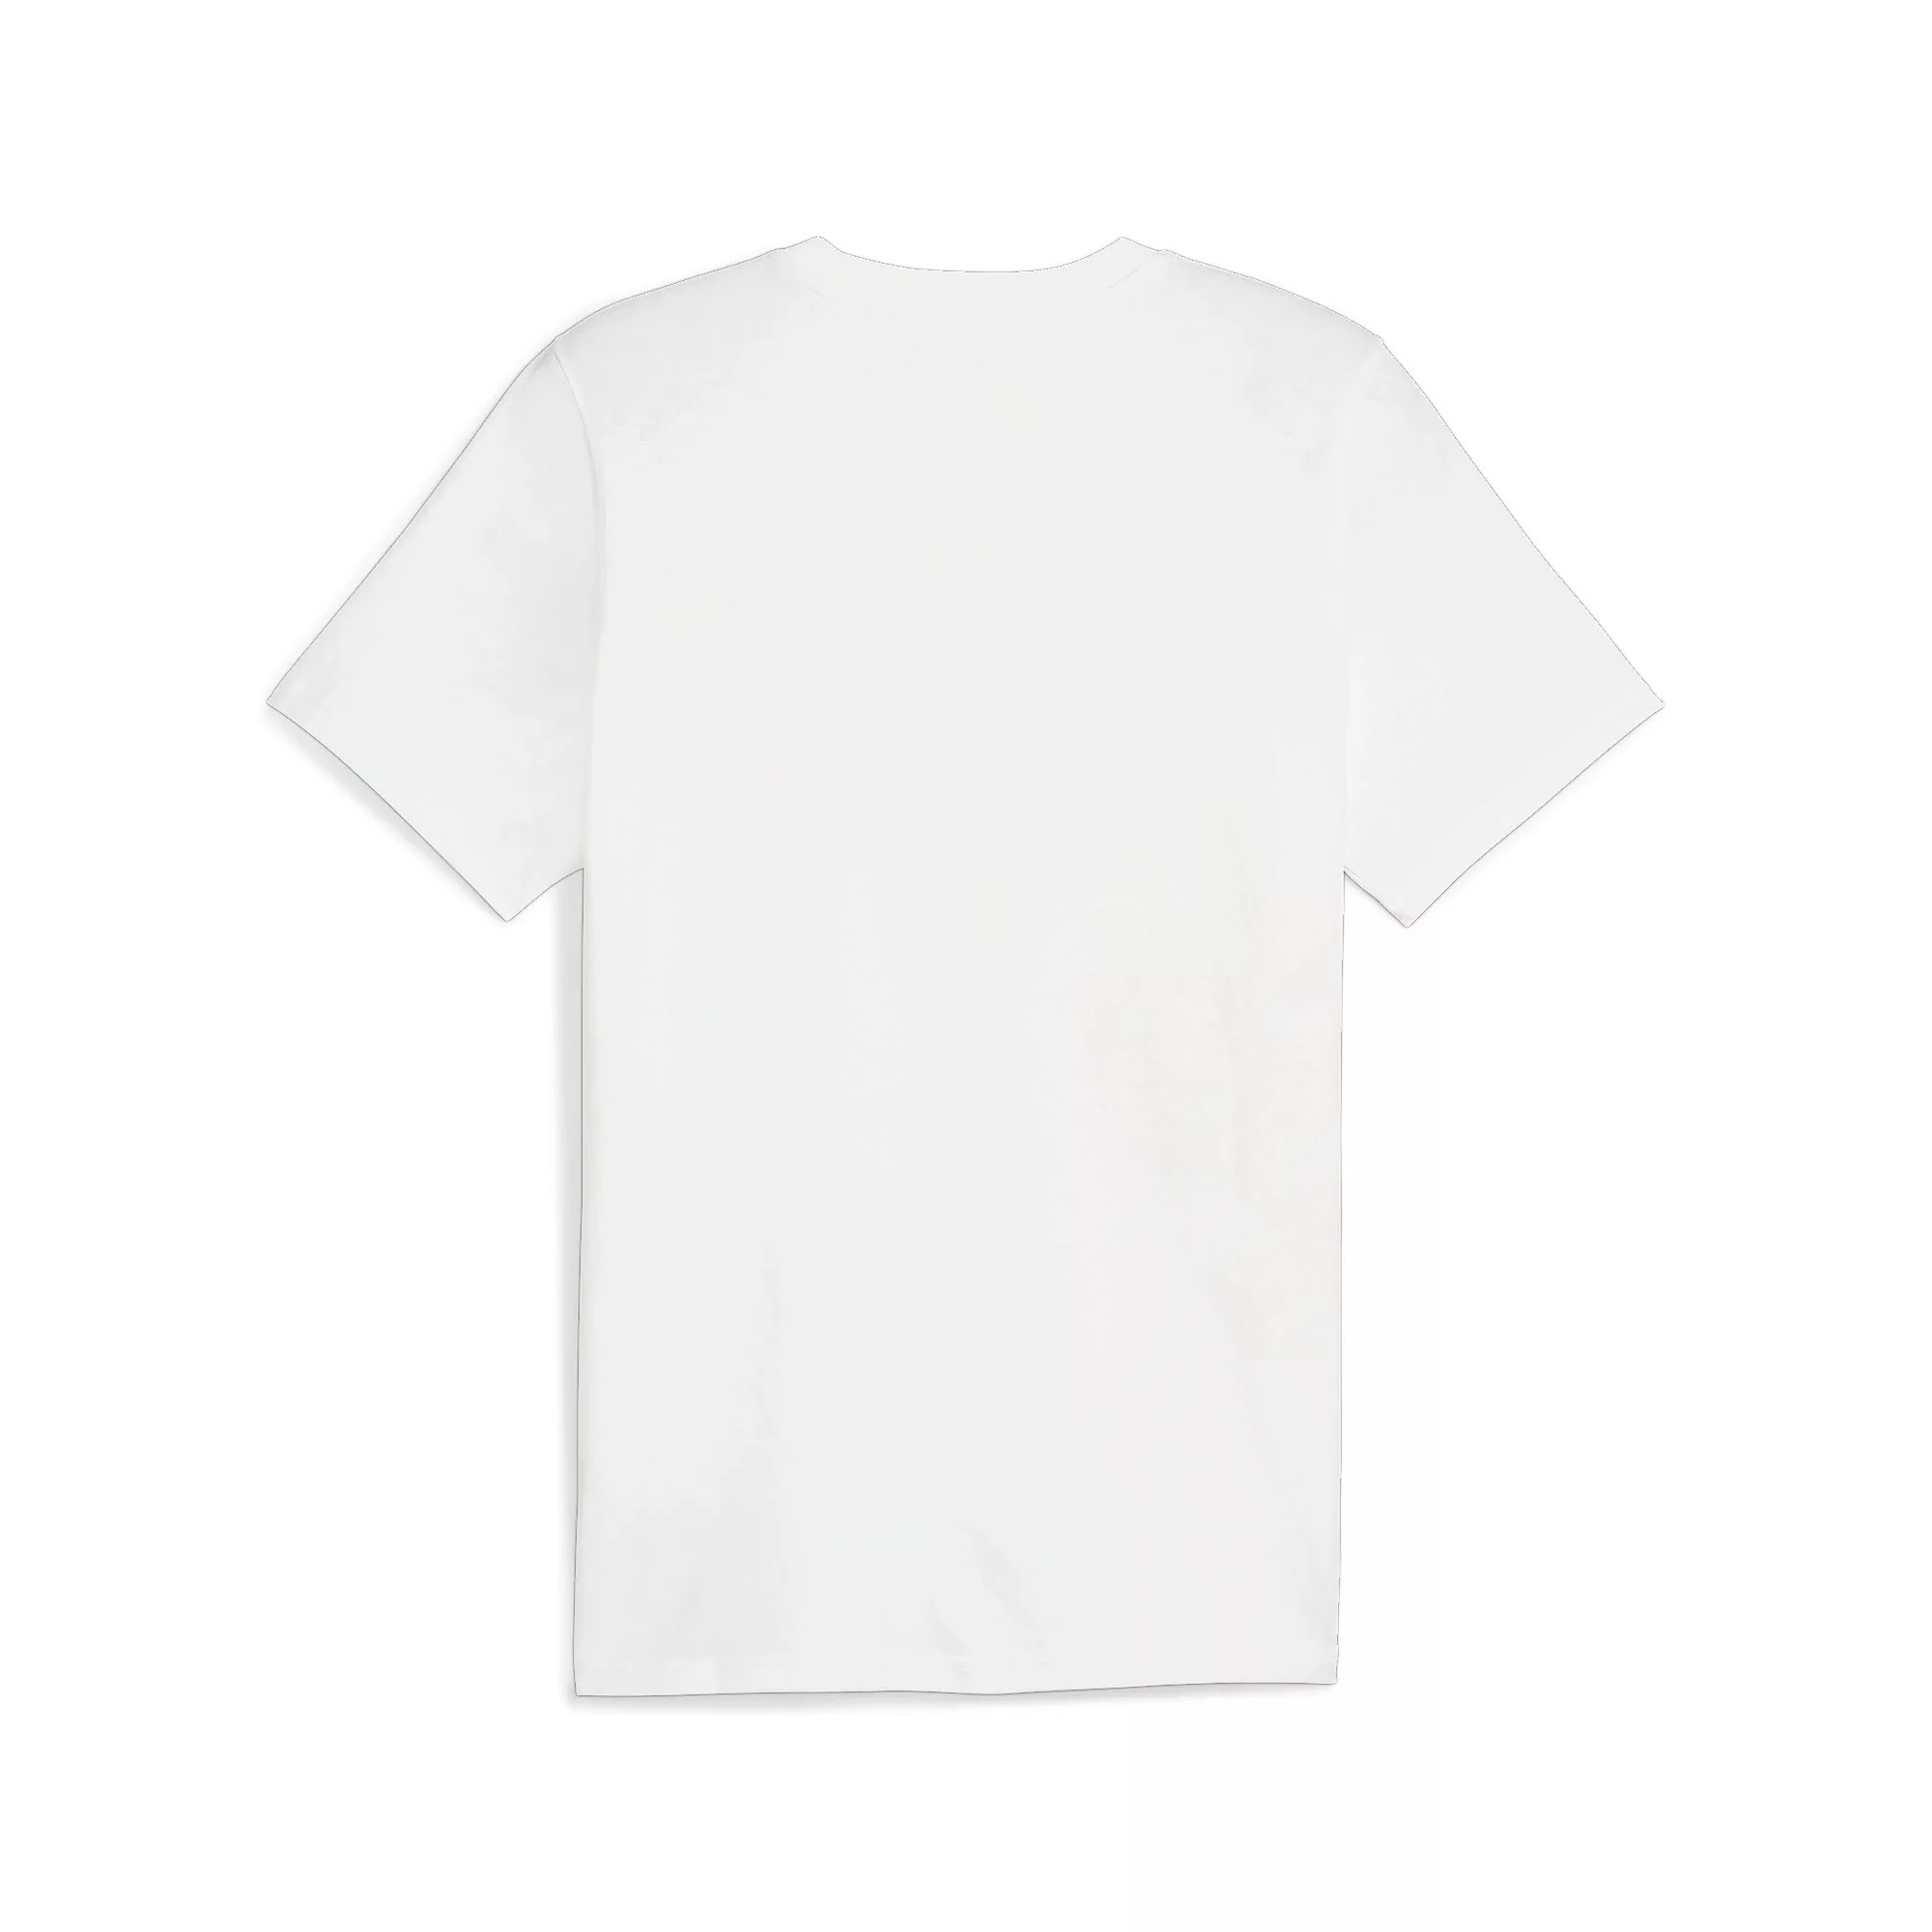 PUMA T-Shirt PUMA POWER Graphic T-Shirt Herren günstig online kaufen